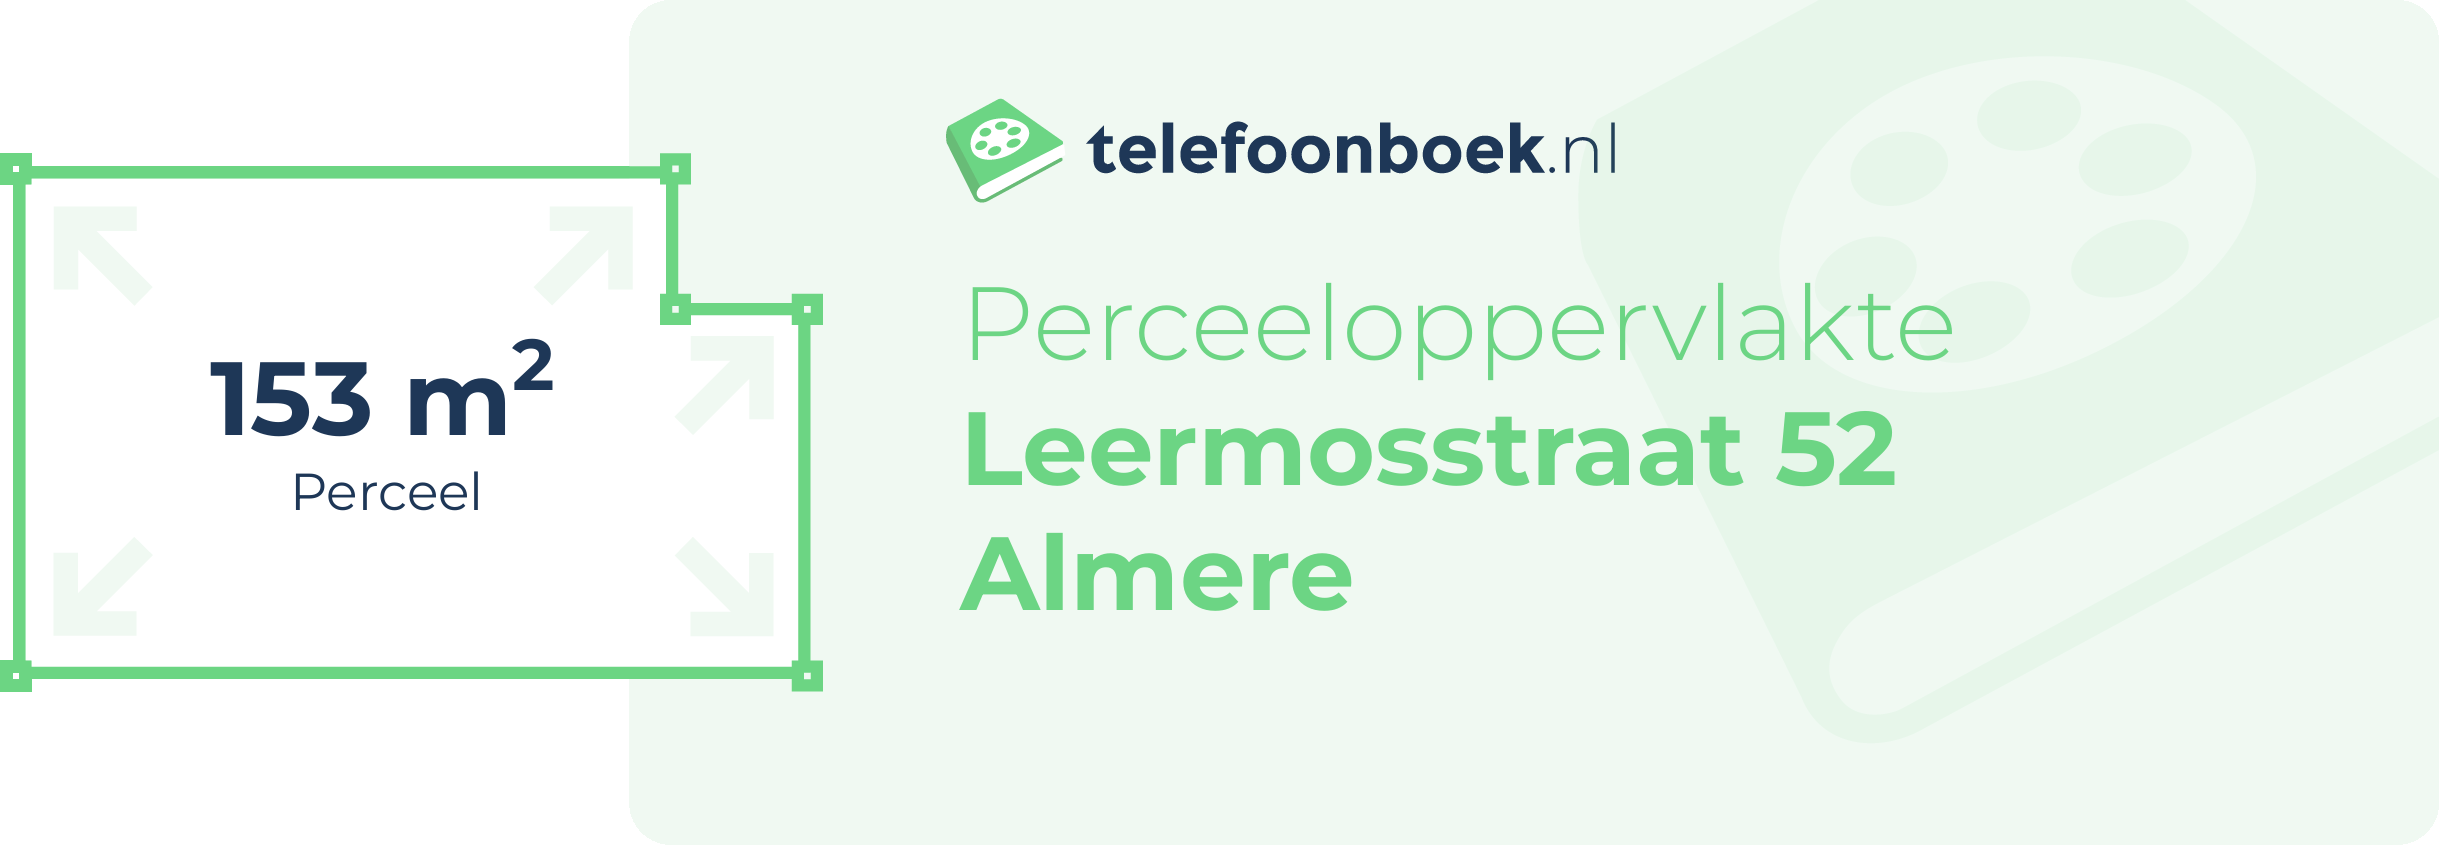 Perceeloppervlakte Leermosstraat 52 Almere